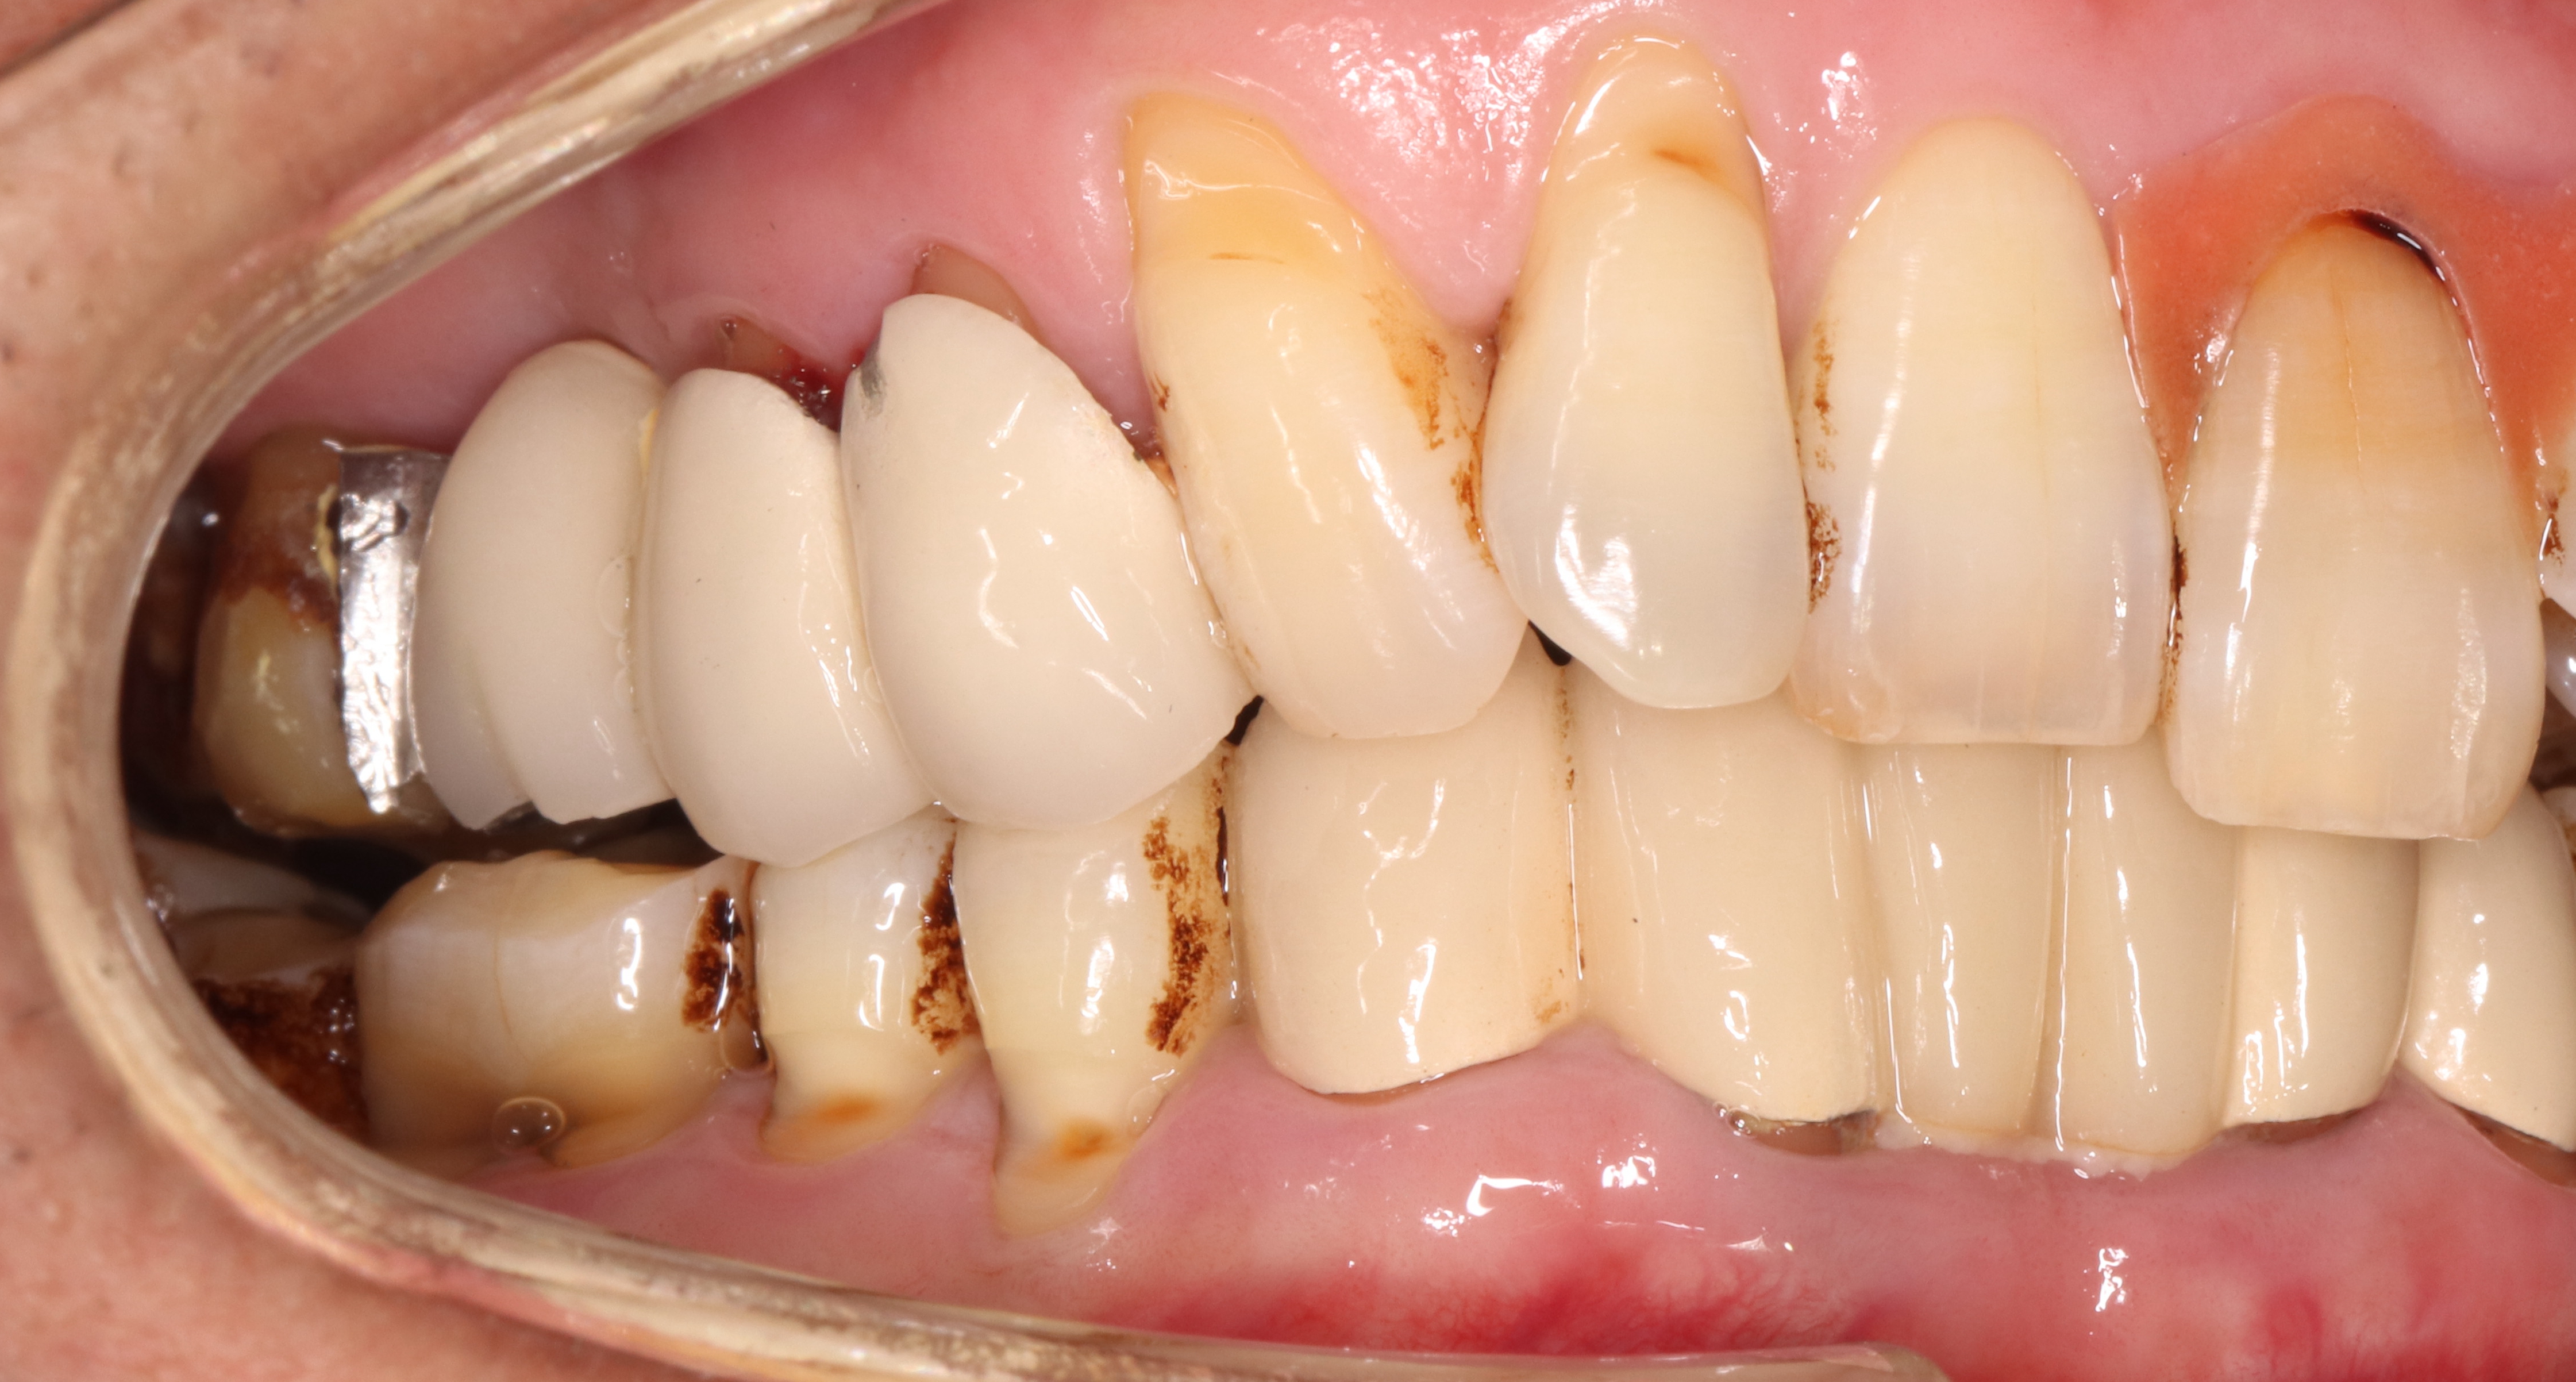 这个假牙用了两年 边缘不密合 结果患者感觉到牙疼拆除牙冠